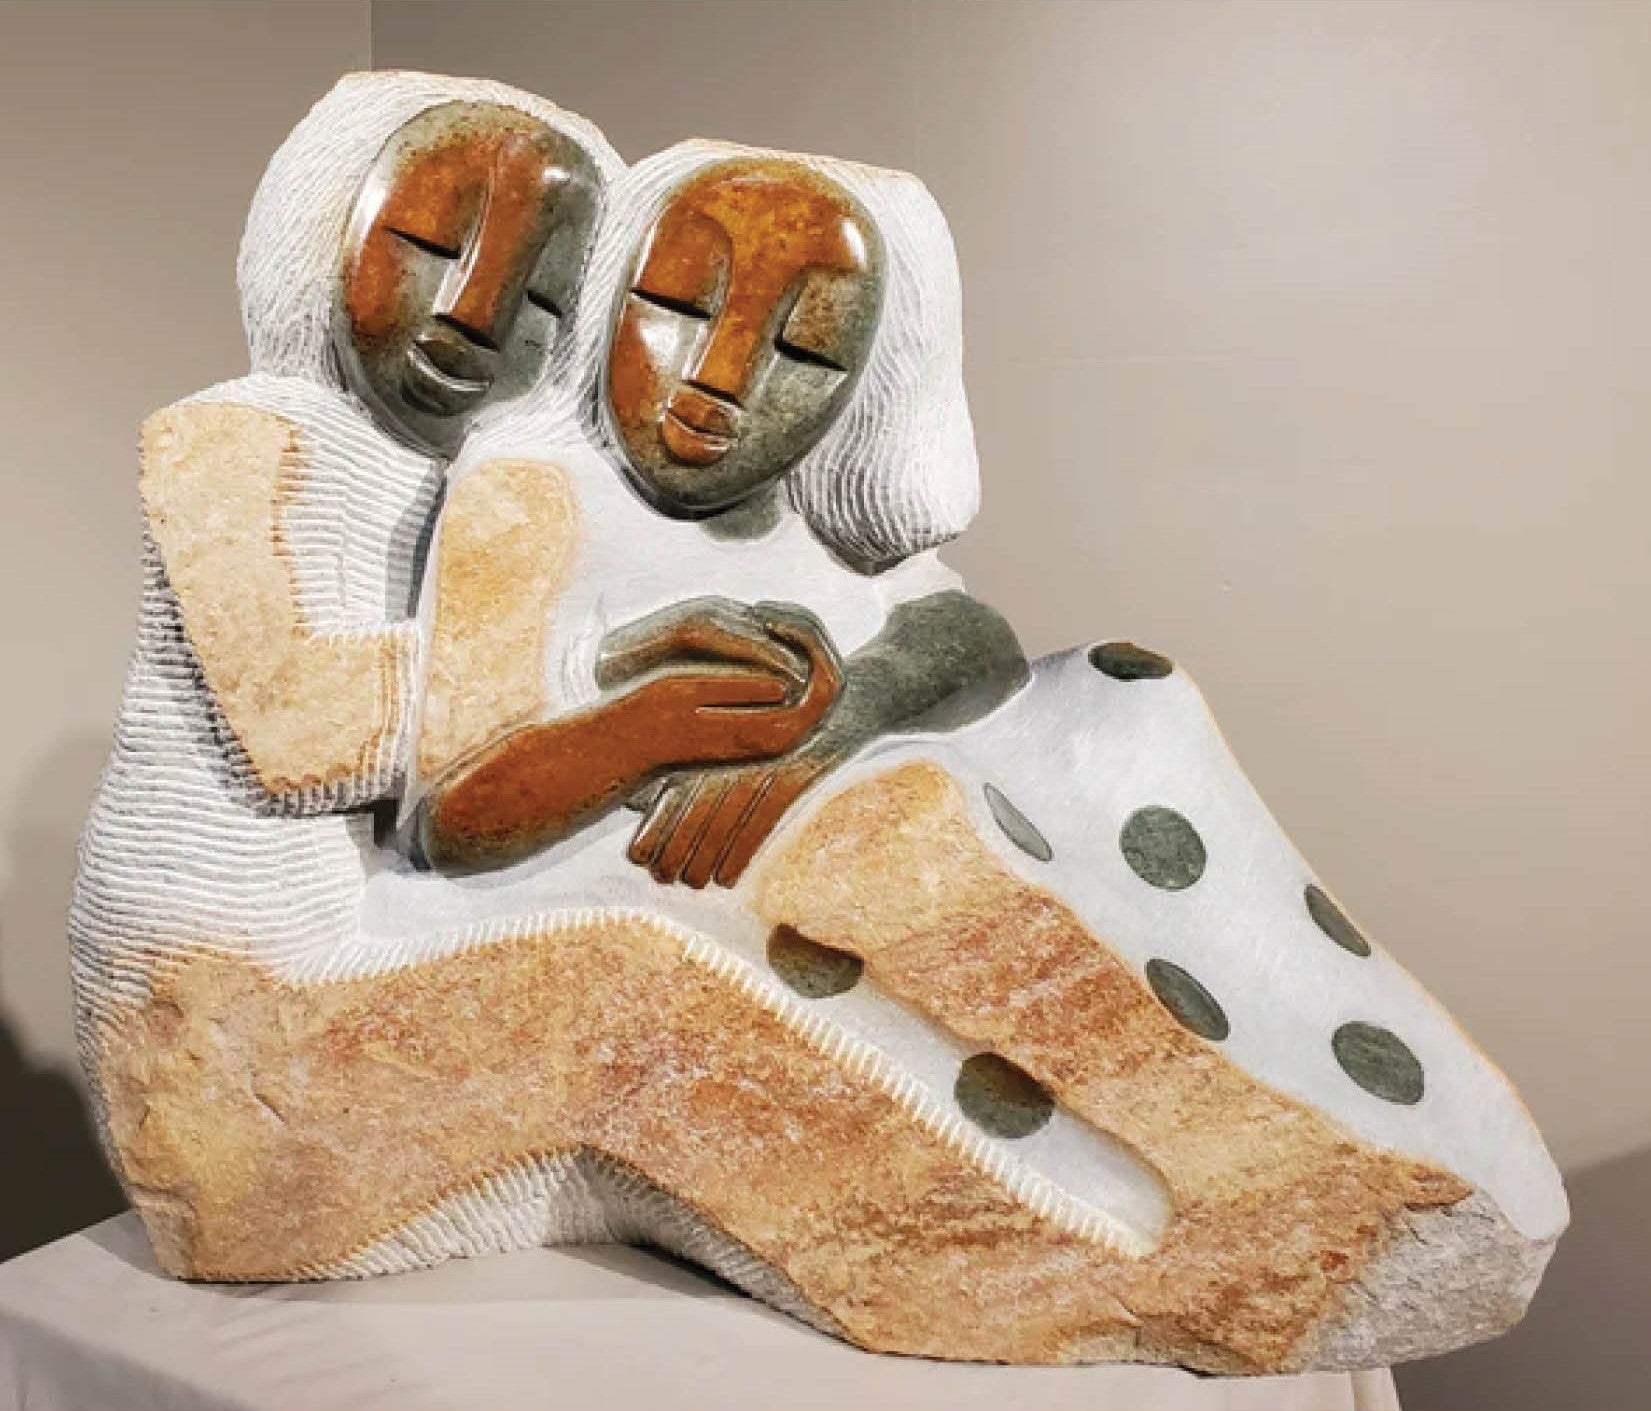 Zimbabwean Sculpture - Family, Love & Relationships